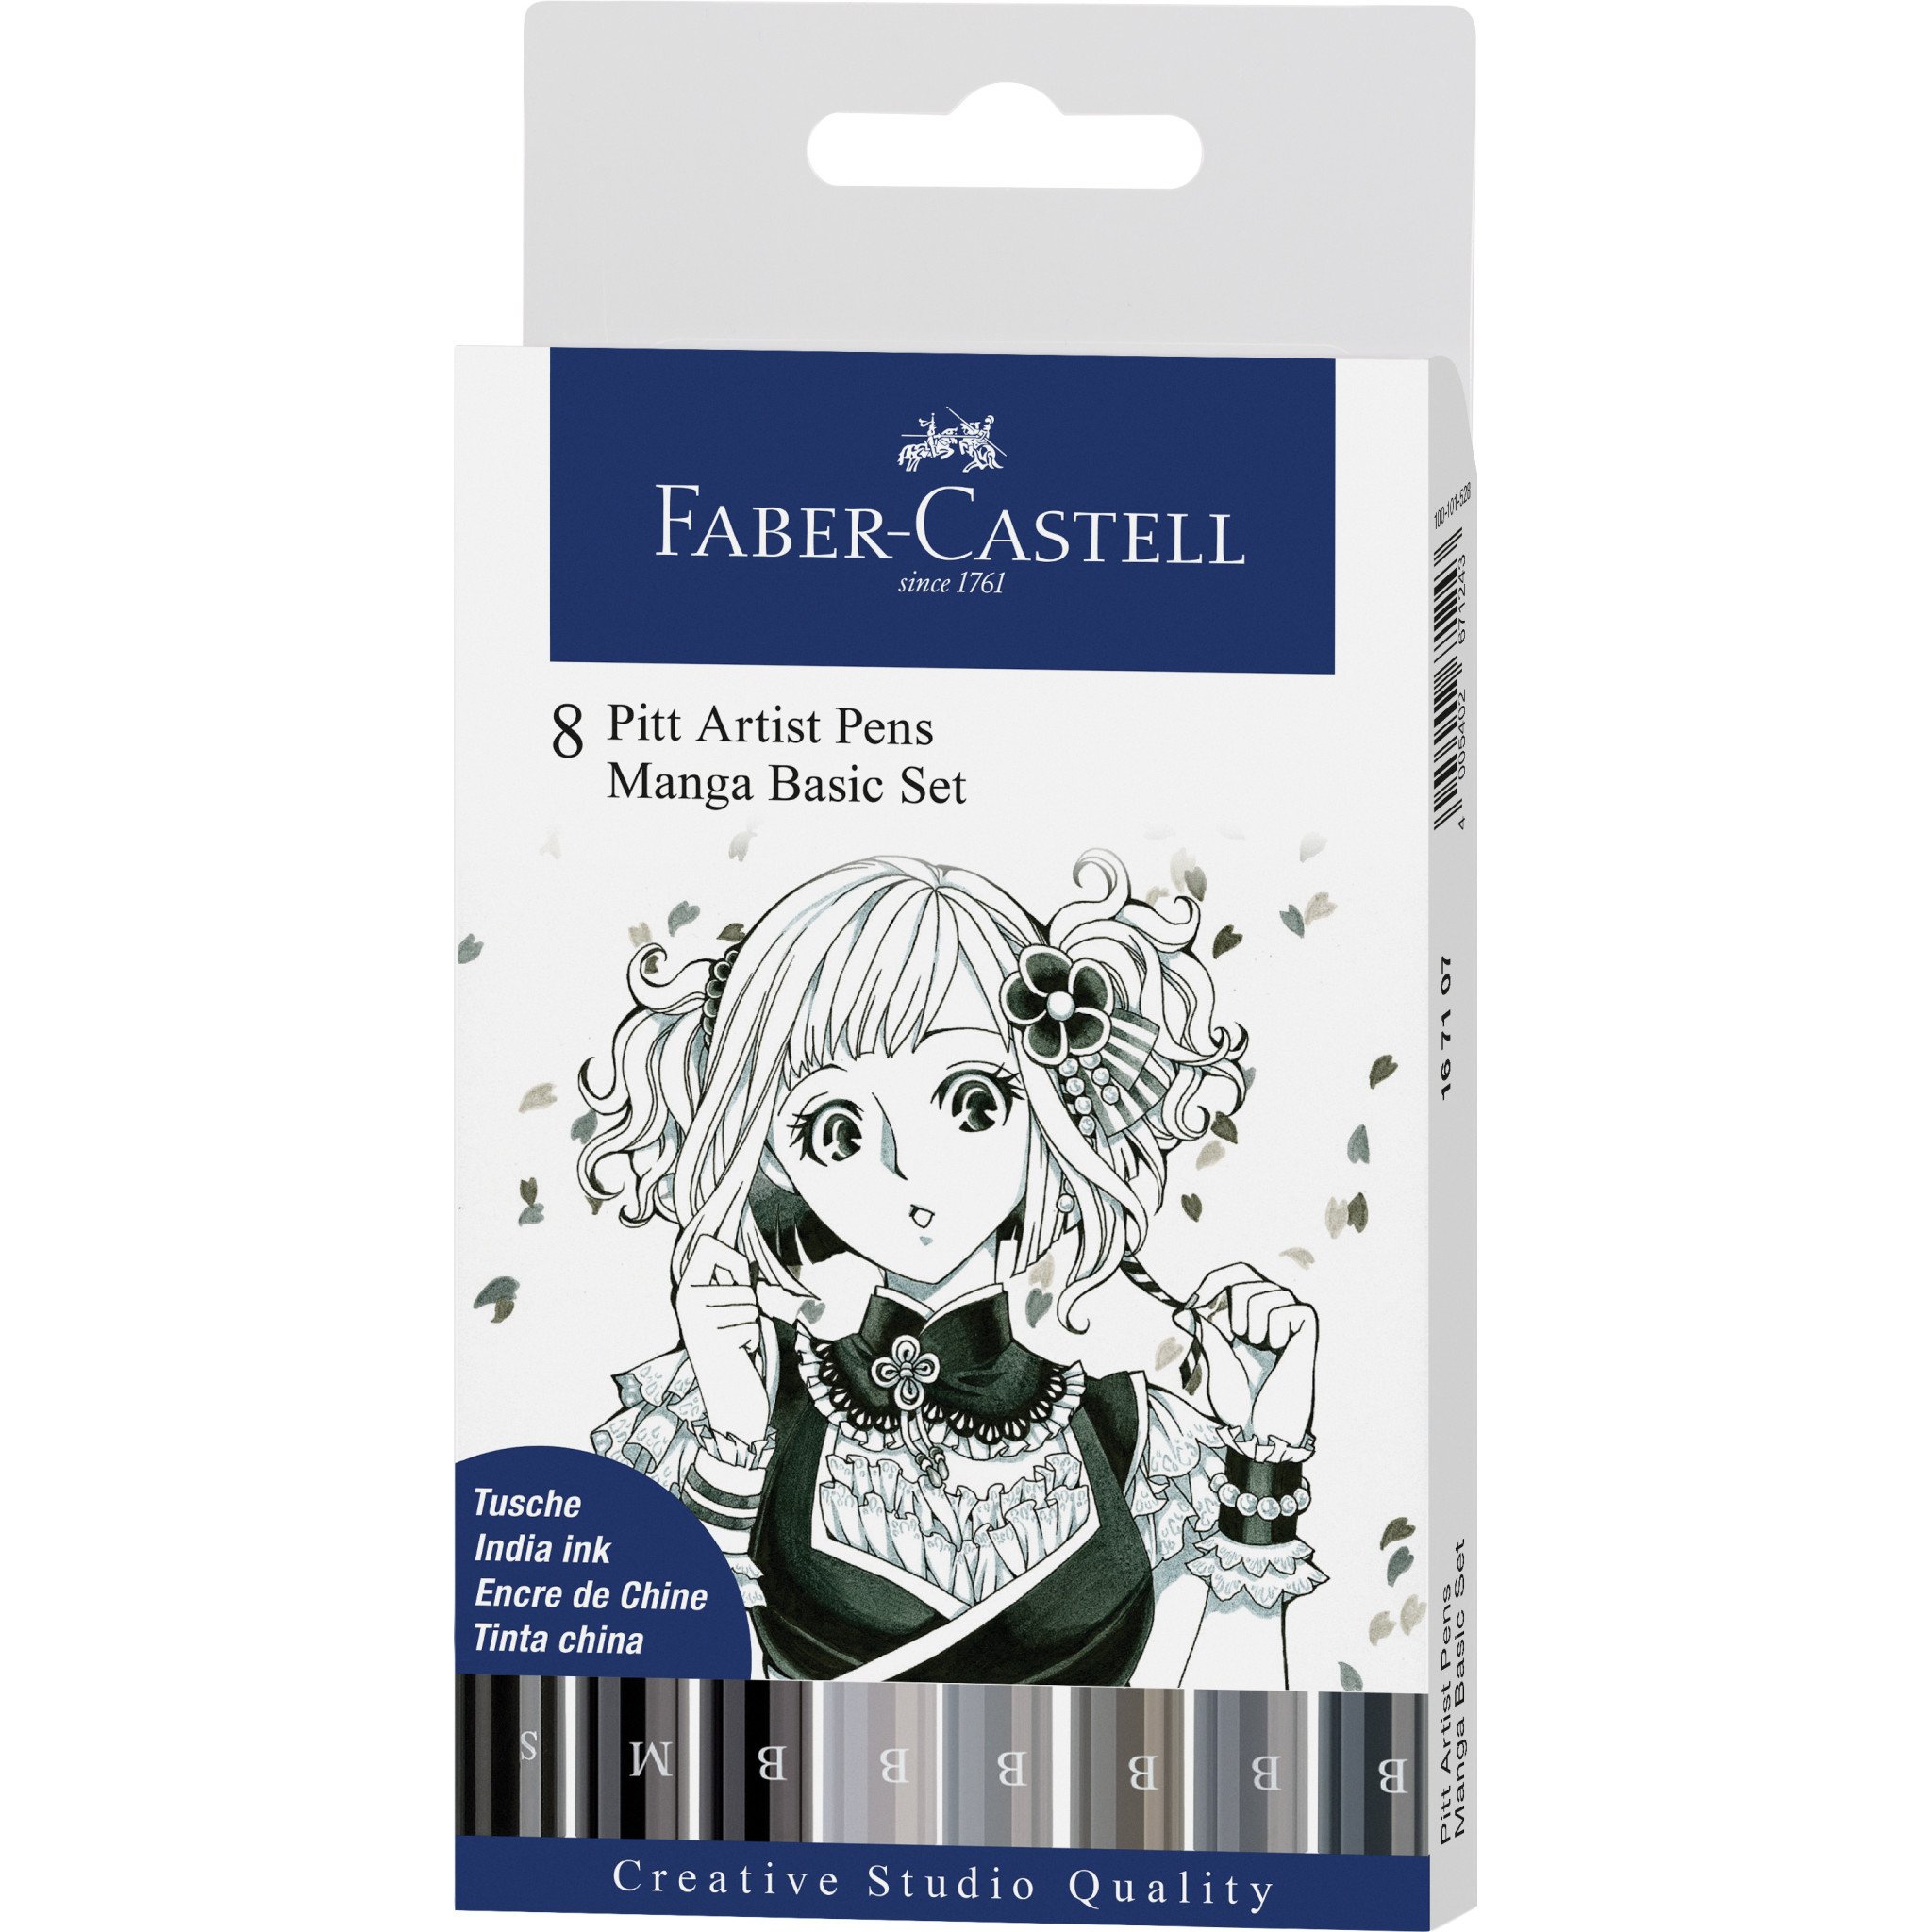 FABER-CASTELL Pitt Artist Pen 167107 Manga Basic Set, 8-Piece - 1